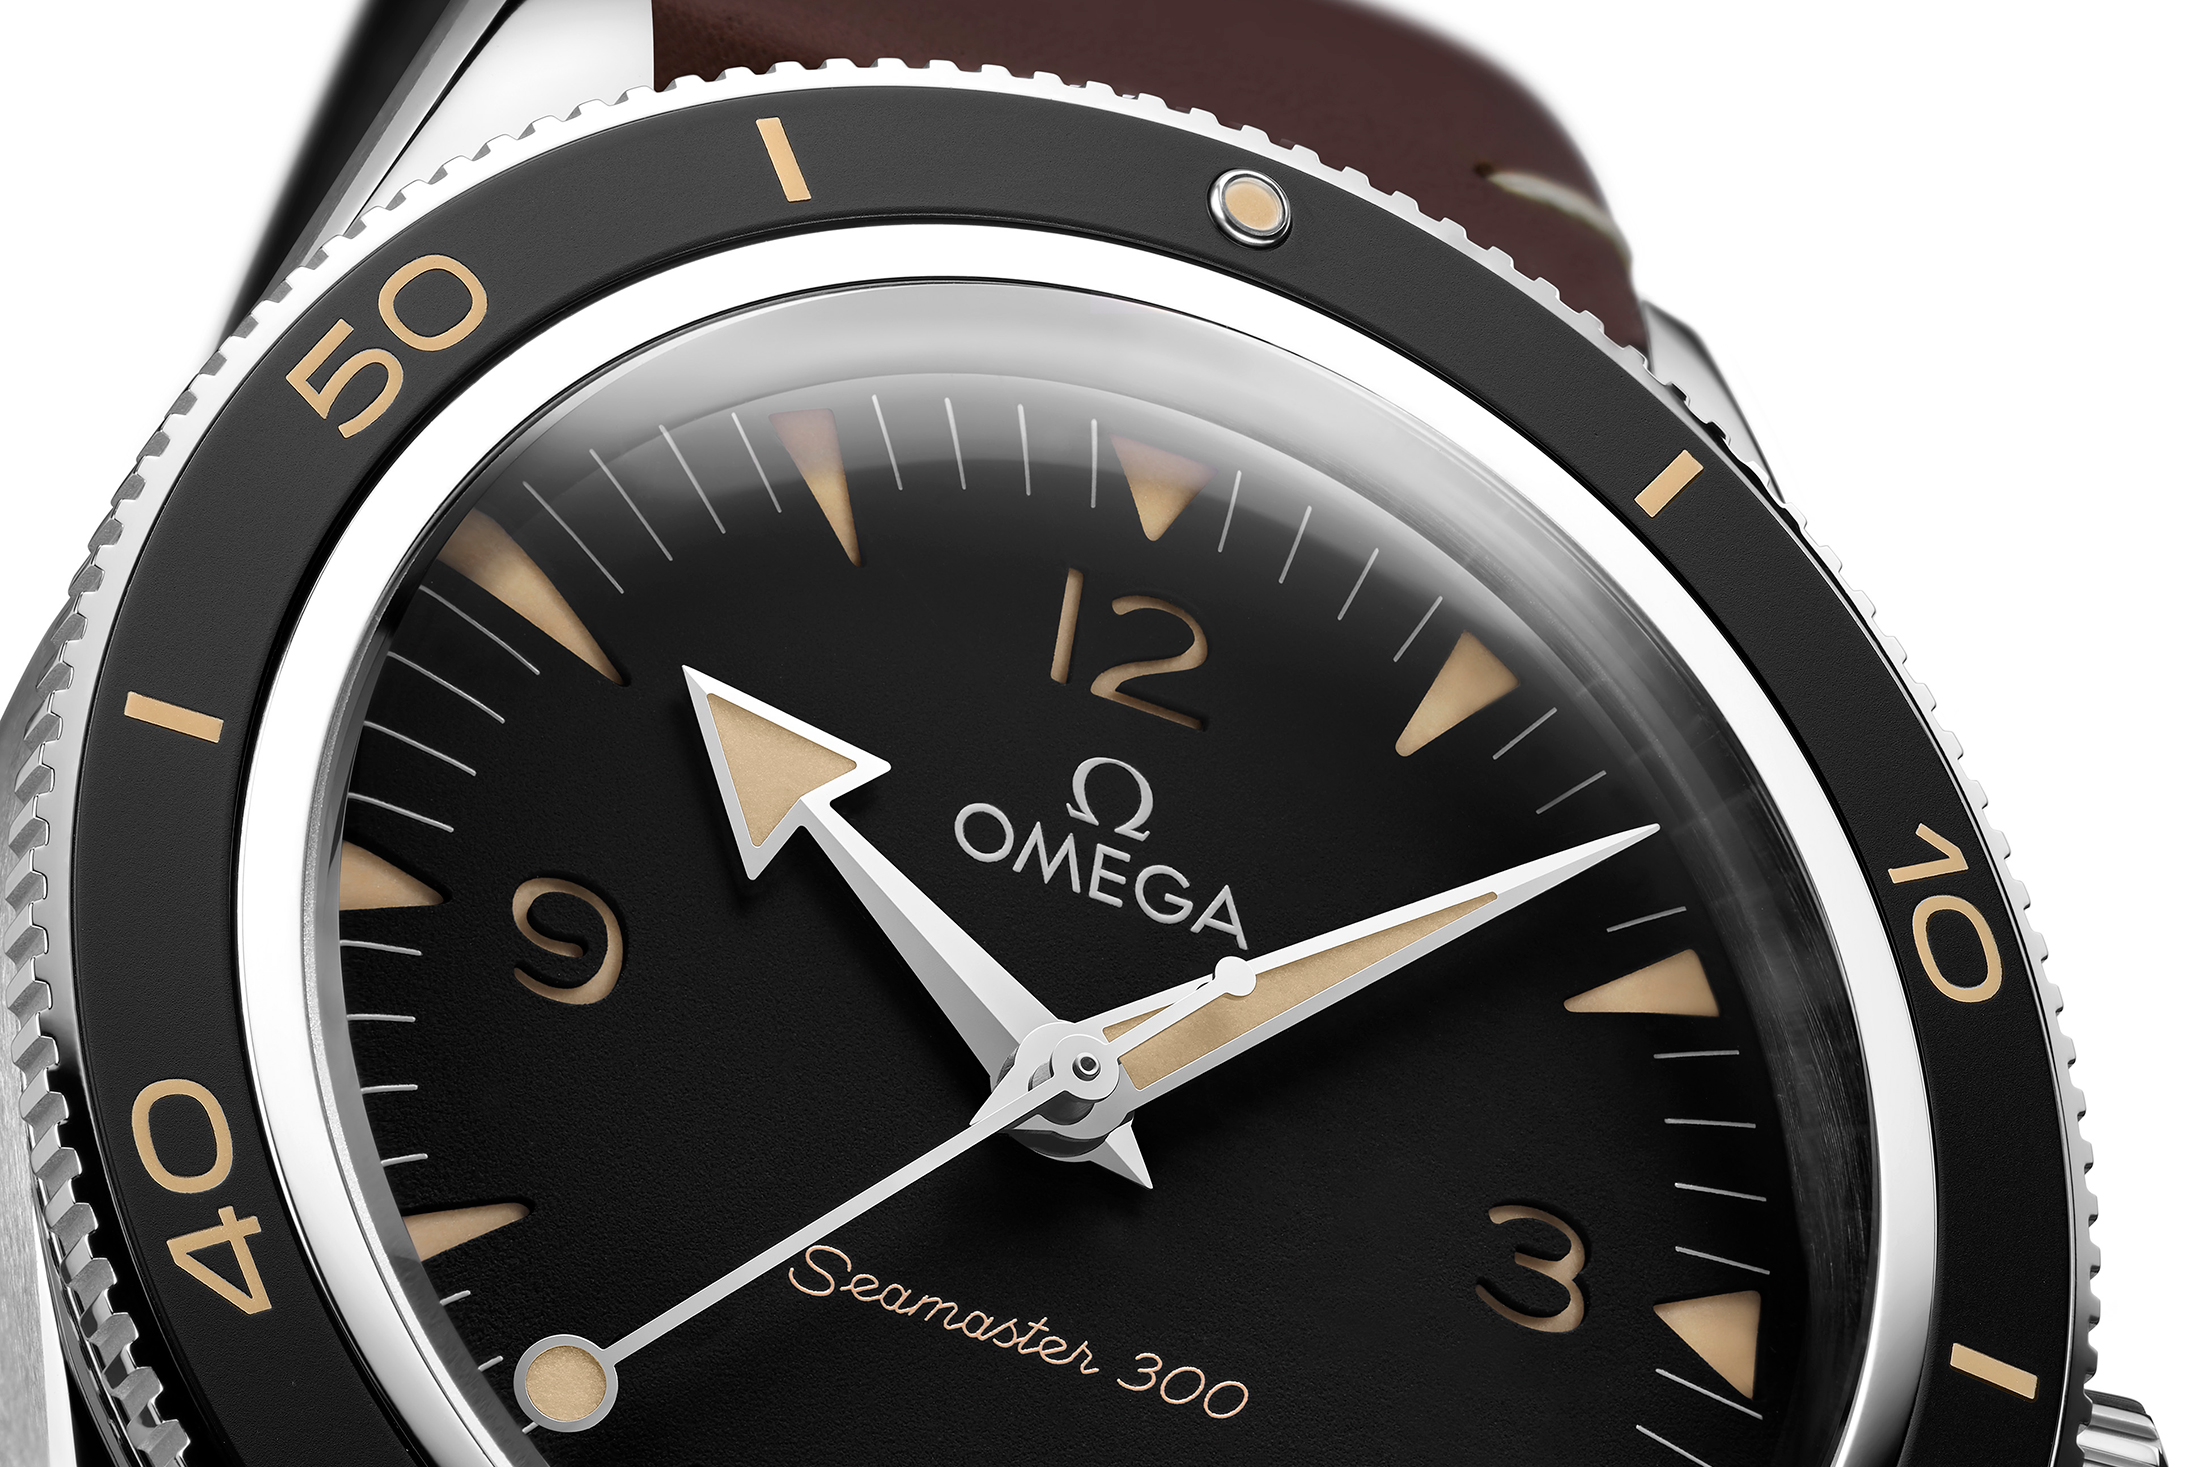 omega seamaster 300 hodinkee